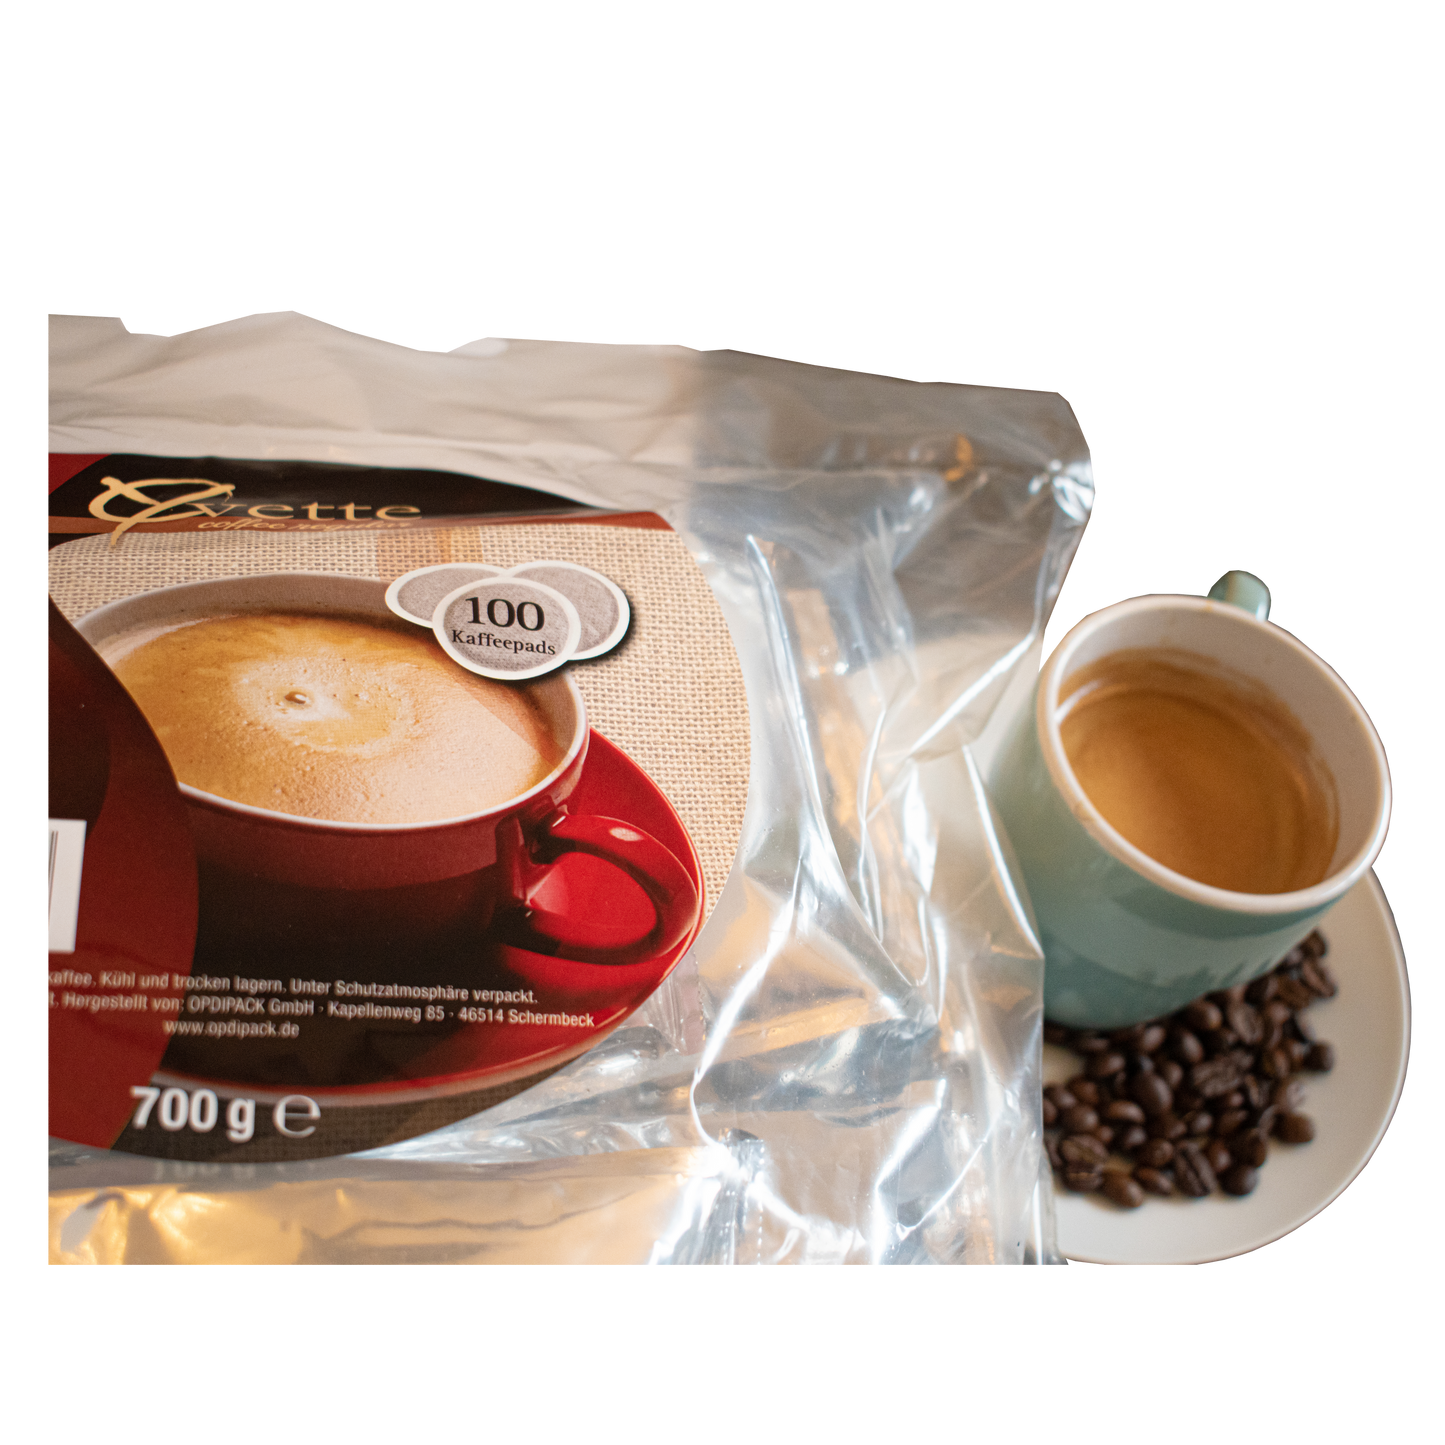 Serviervorschlag mit Tasse Kaffee mit einzelnen Kaffeebohnen der sorte Regular crema